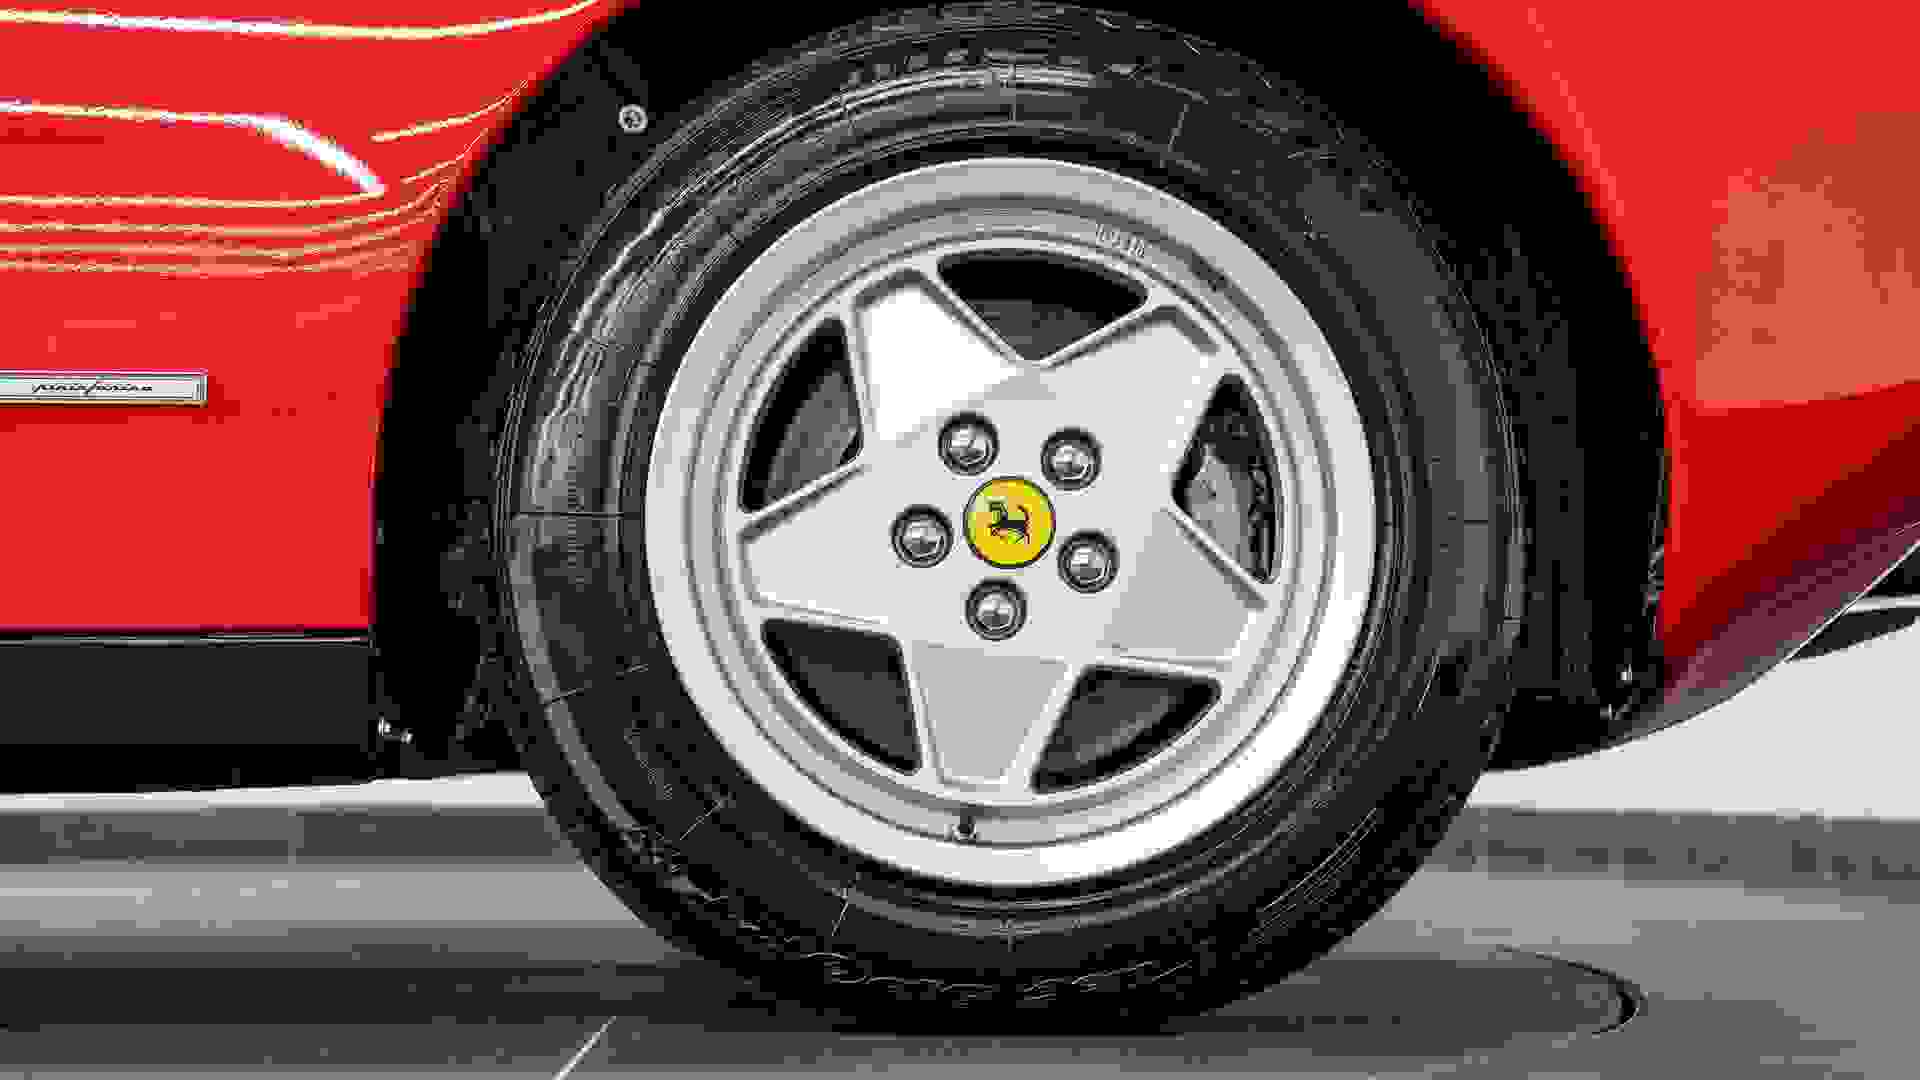 Ferrari Testarossa Photo 8a485e02-e20d-4498-99a9-6f7af42975fc.jpg